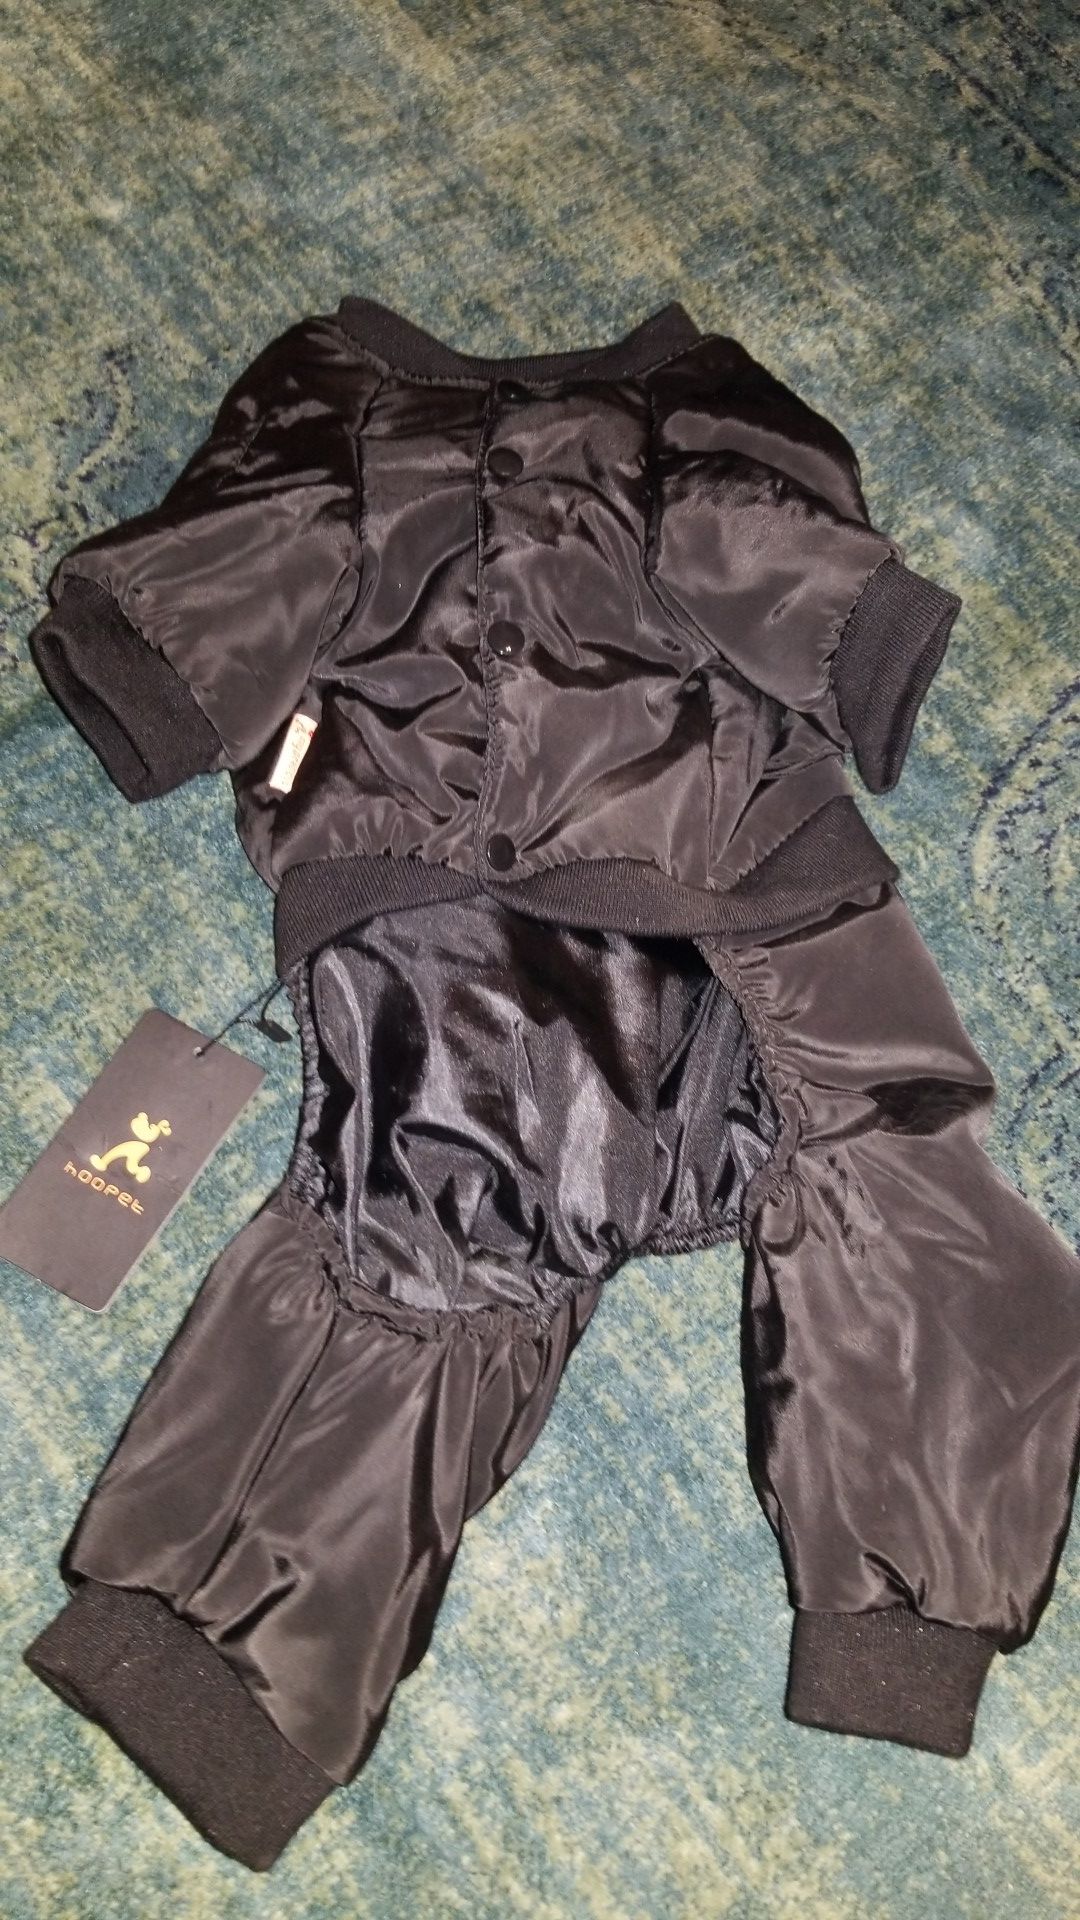 Dog bomber suit and rain jacket